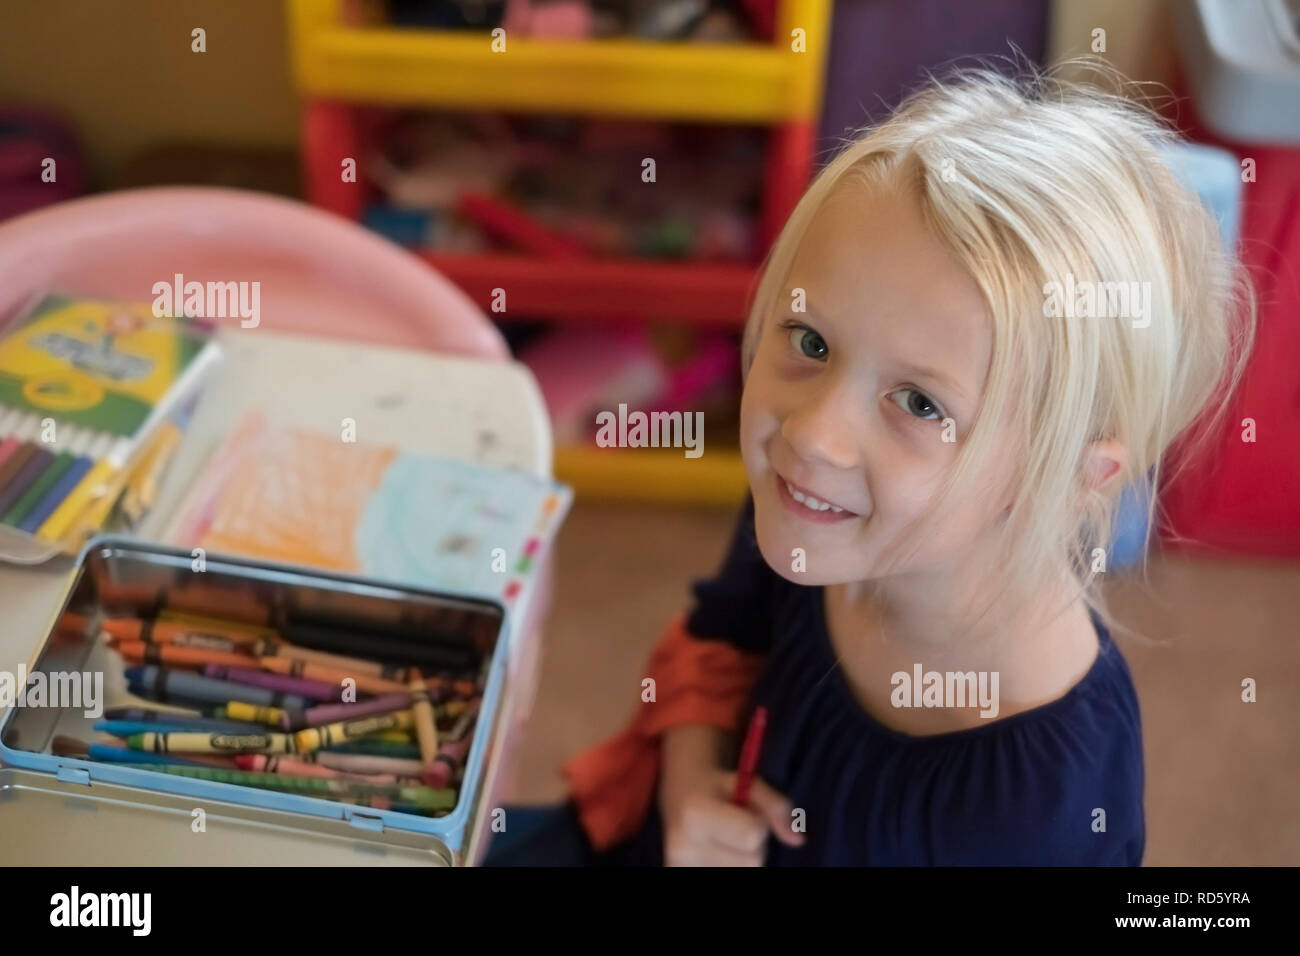 Un bambino di 5 anni bionda ragazza caucasica afferra una matita colorata mentre la colorazione e sorrisi fino alla telecamera. Stati Uniti d'America. Foto Stock